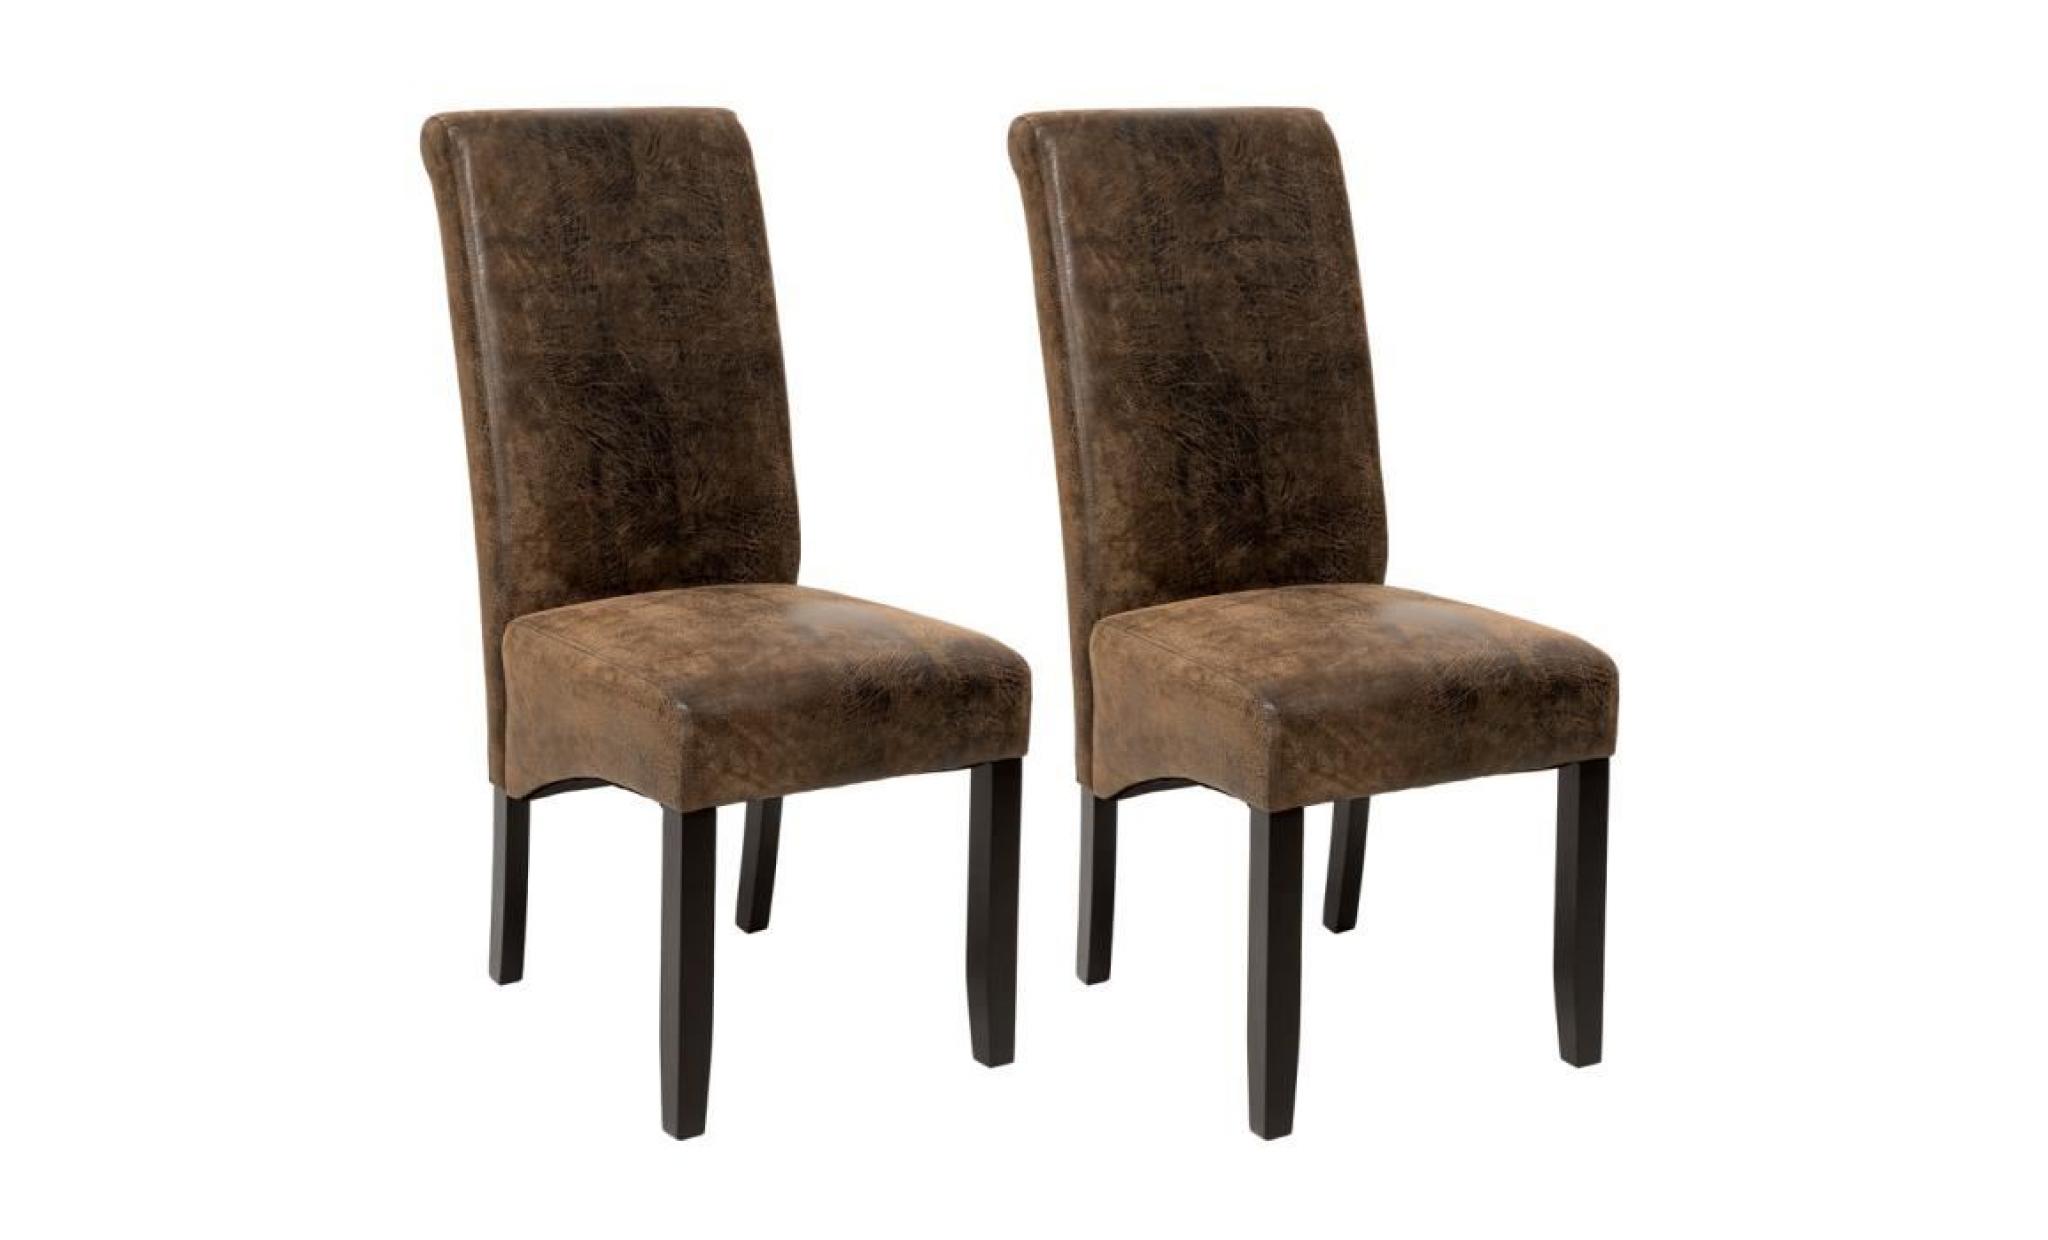 tectake 2 chaises de salle à manger design romantique structure en bois 106 cm marron aspect vieilli / daim